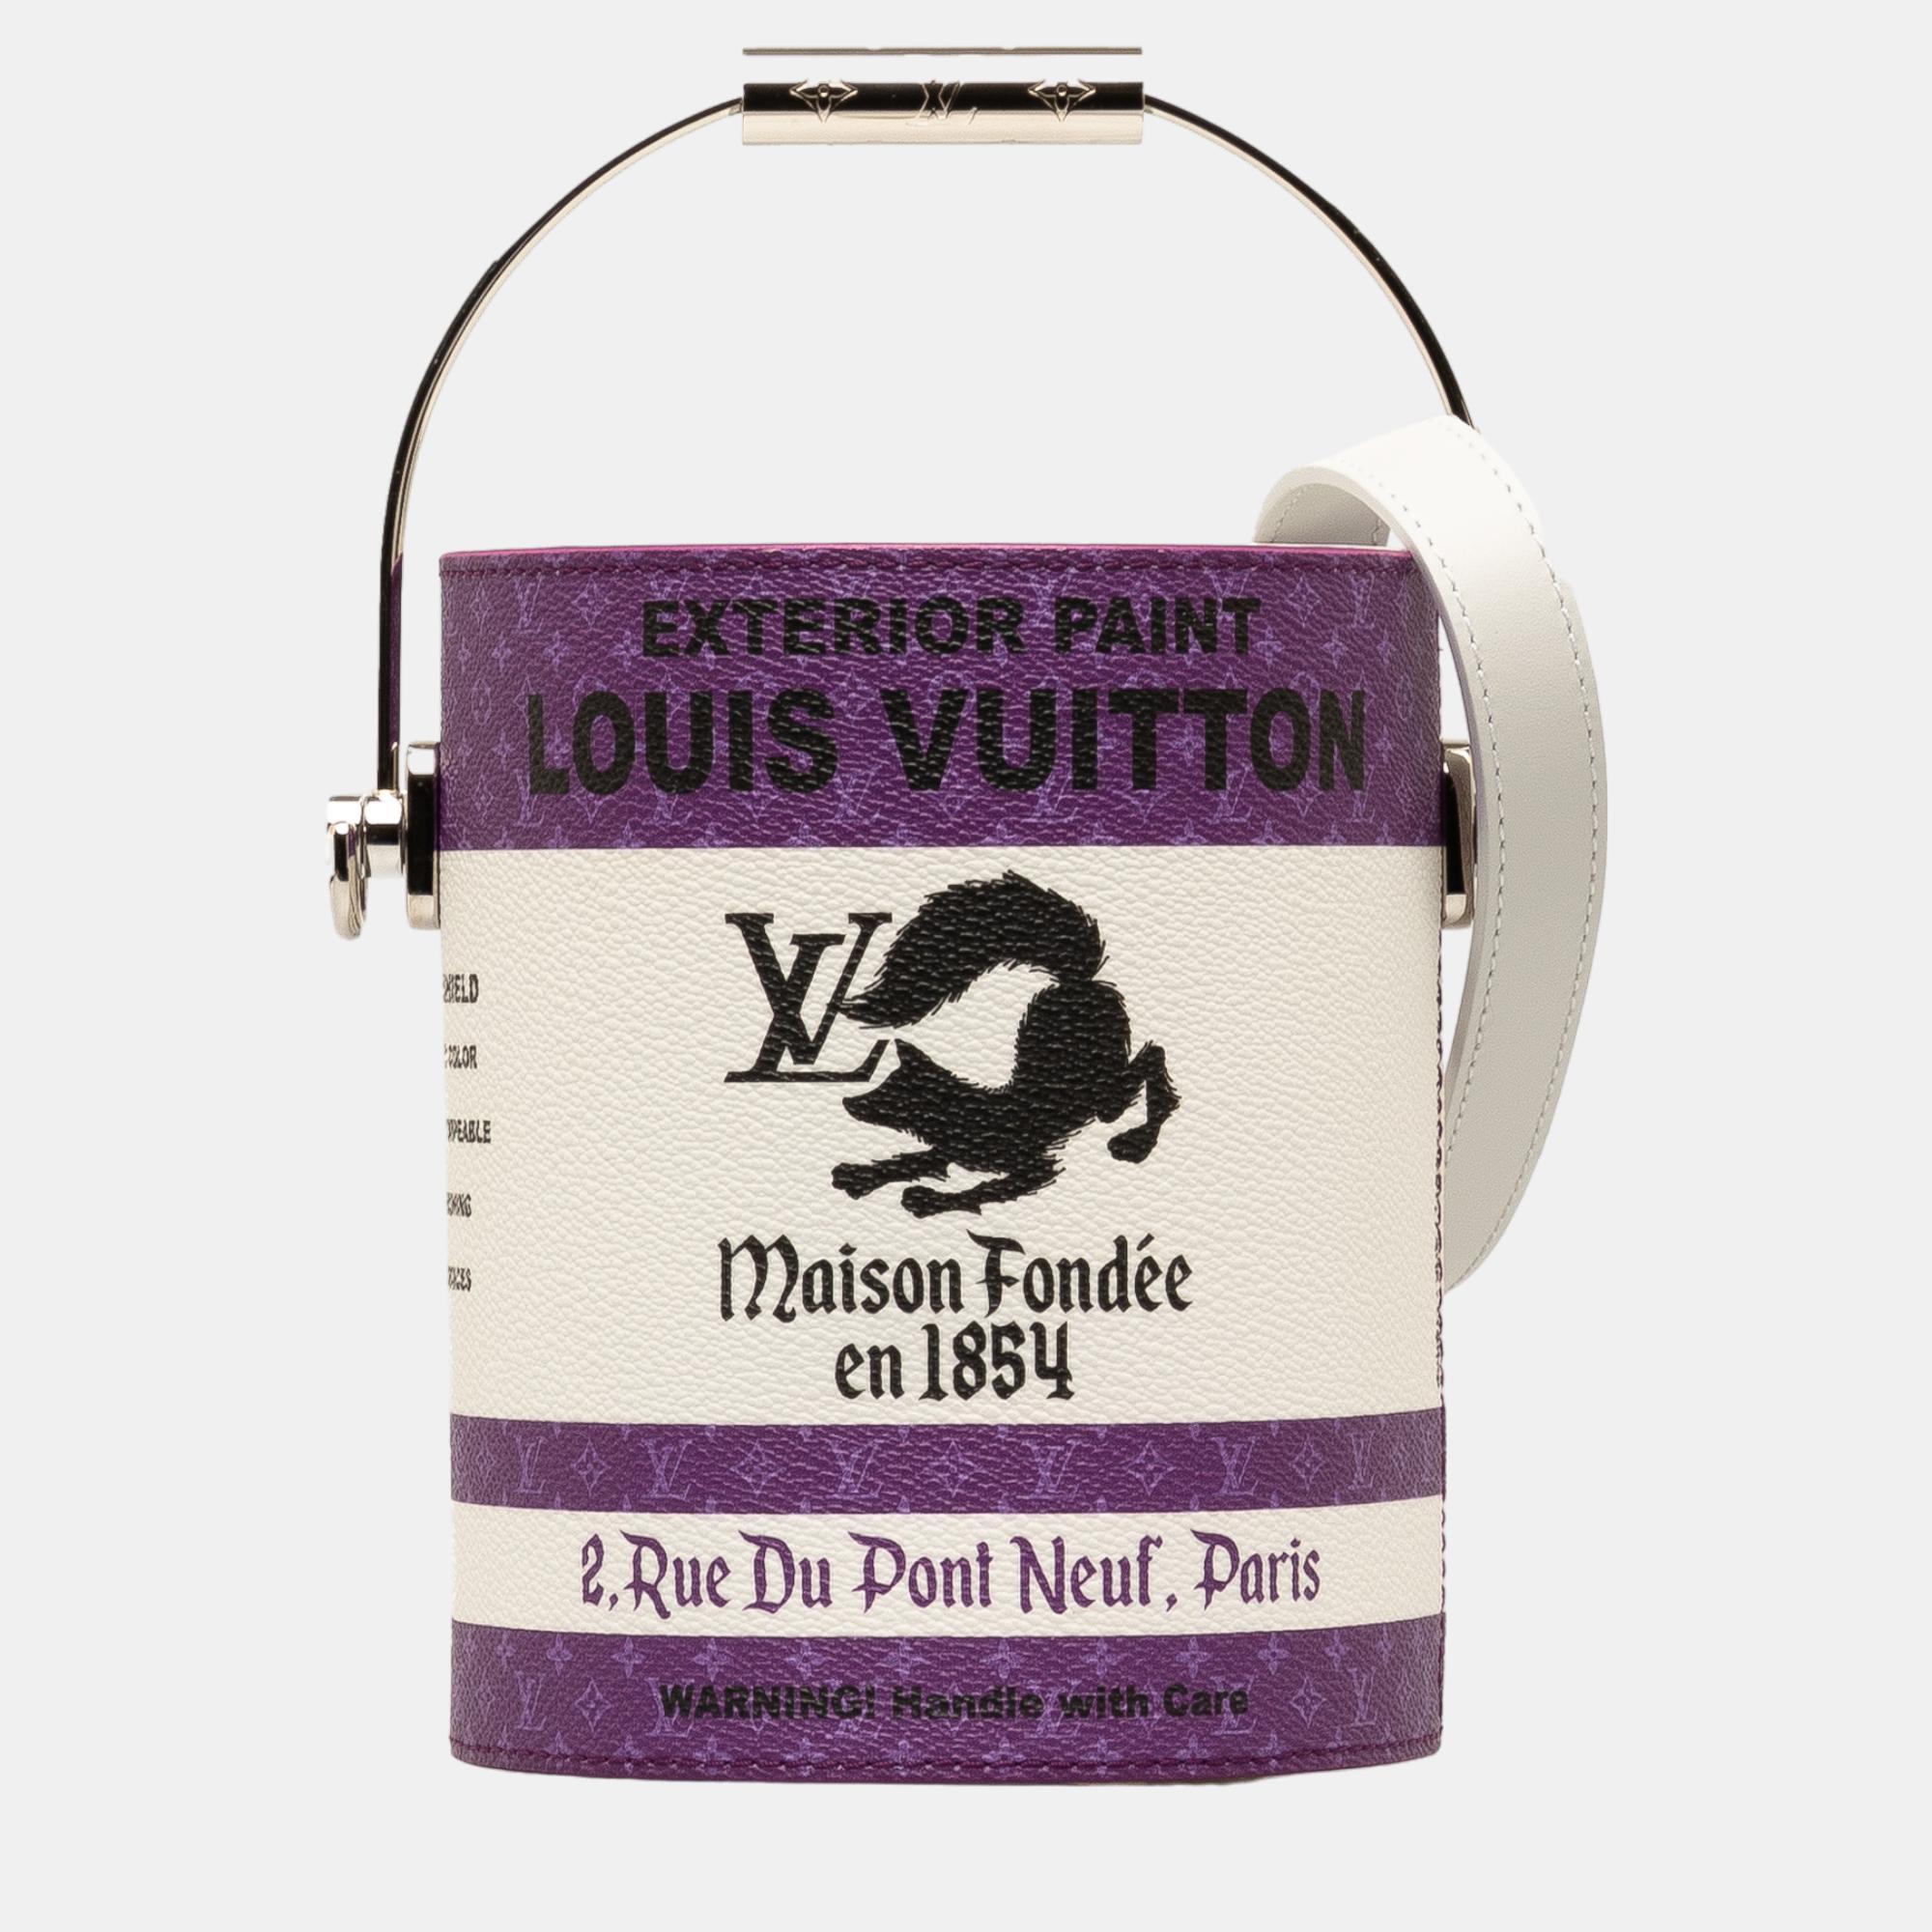 Louis vuitton white/purple monogram paint can